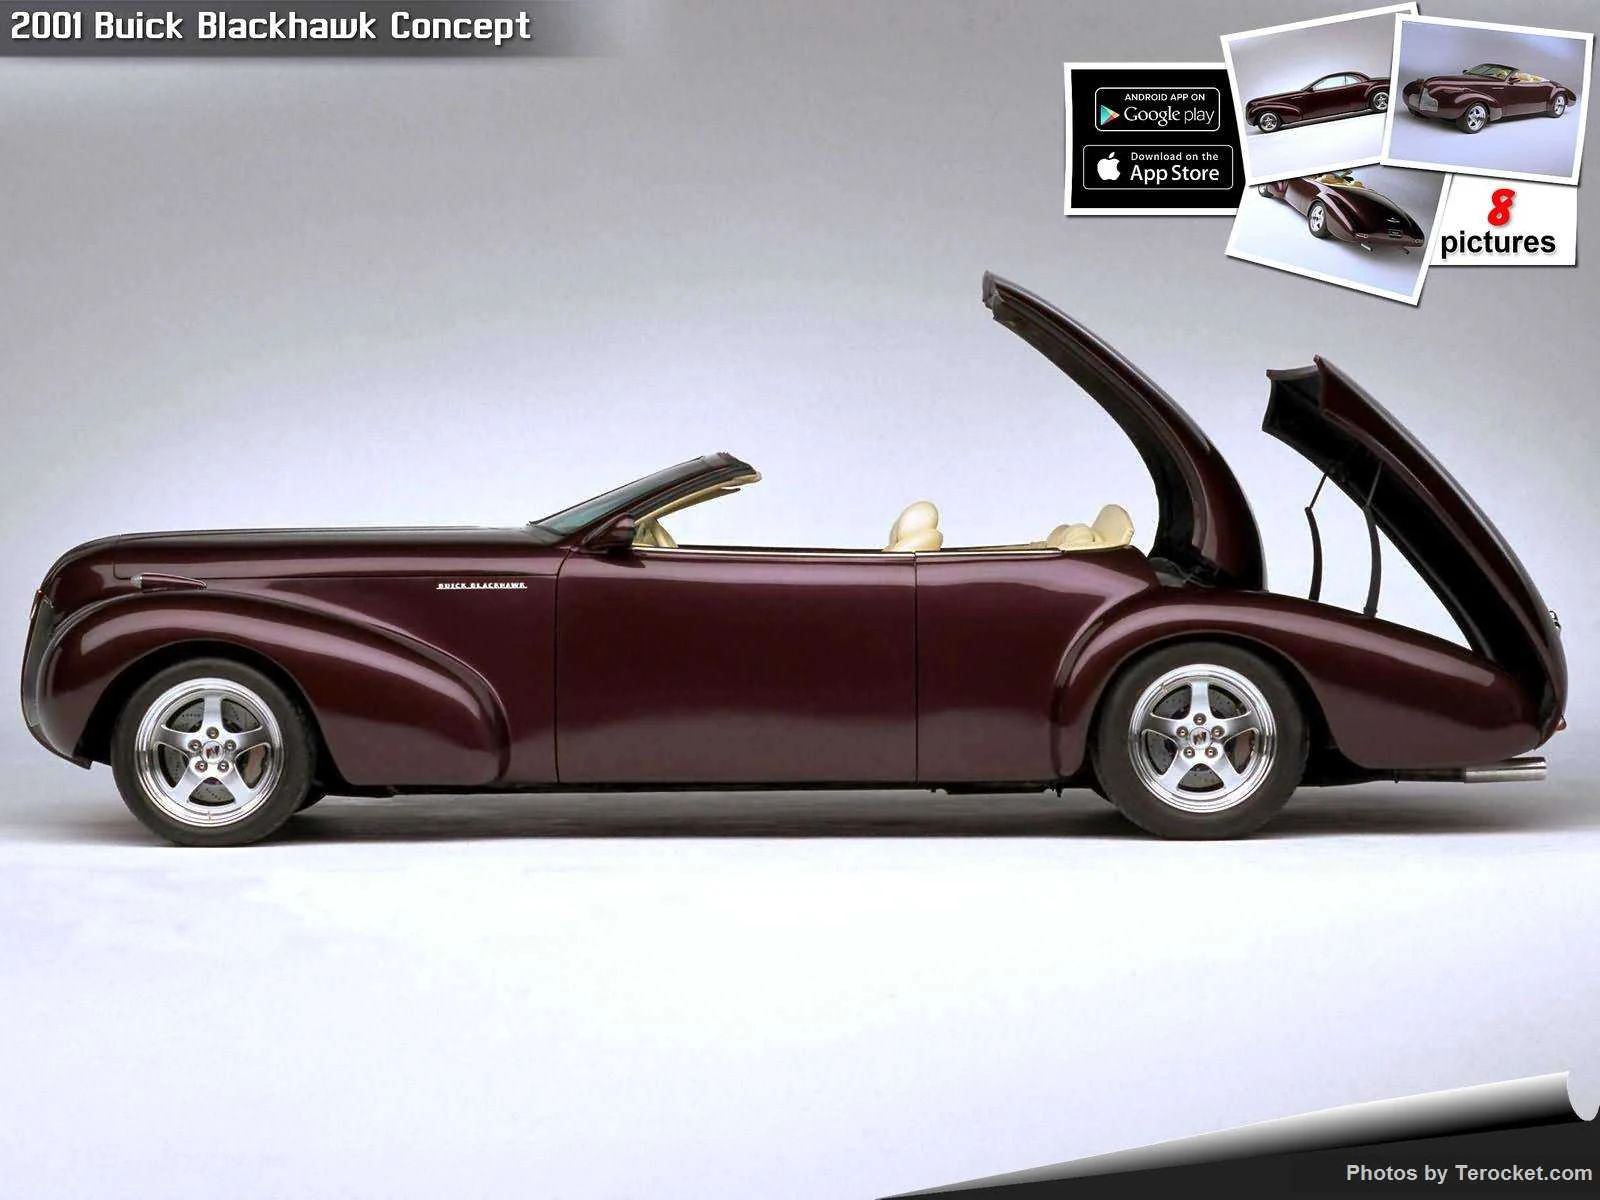 Hình ảnh xe ô tô Buick Blackhawk Concept 2001 & nội ngoại thất